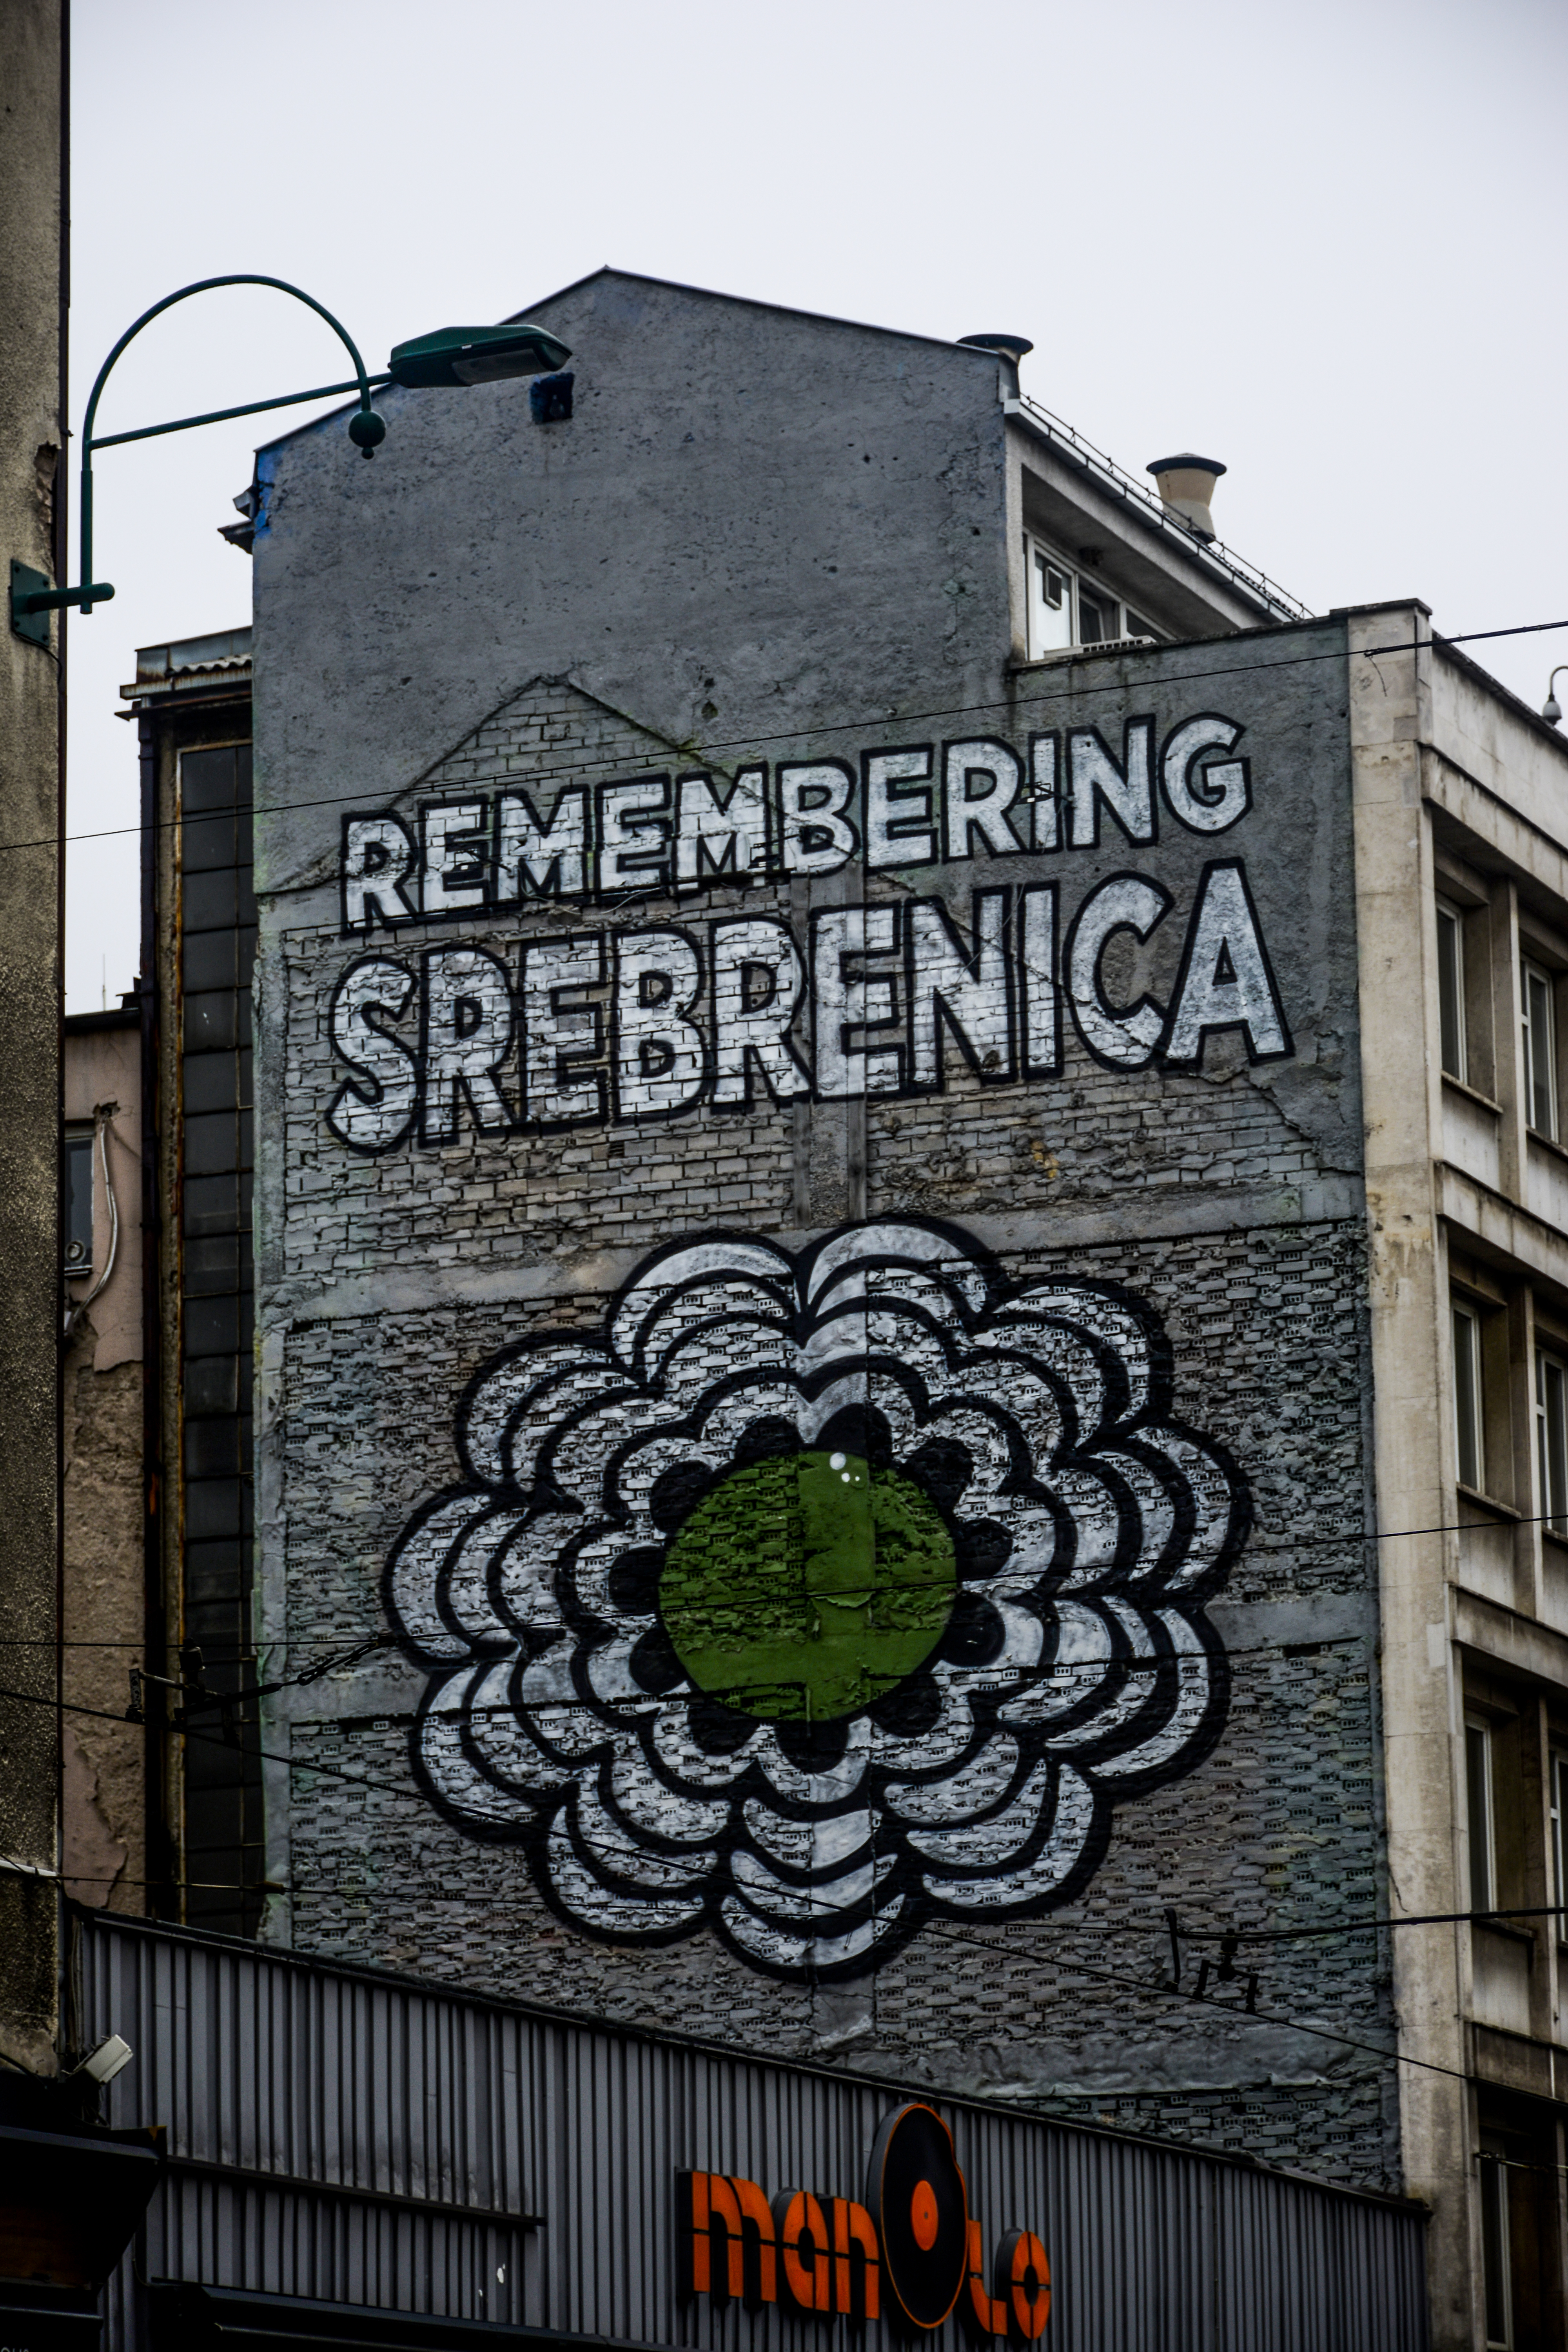 Възпоменателен графит за Клането в Сребреница по време на гражданската война в Босна и Херцеговина